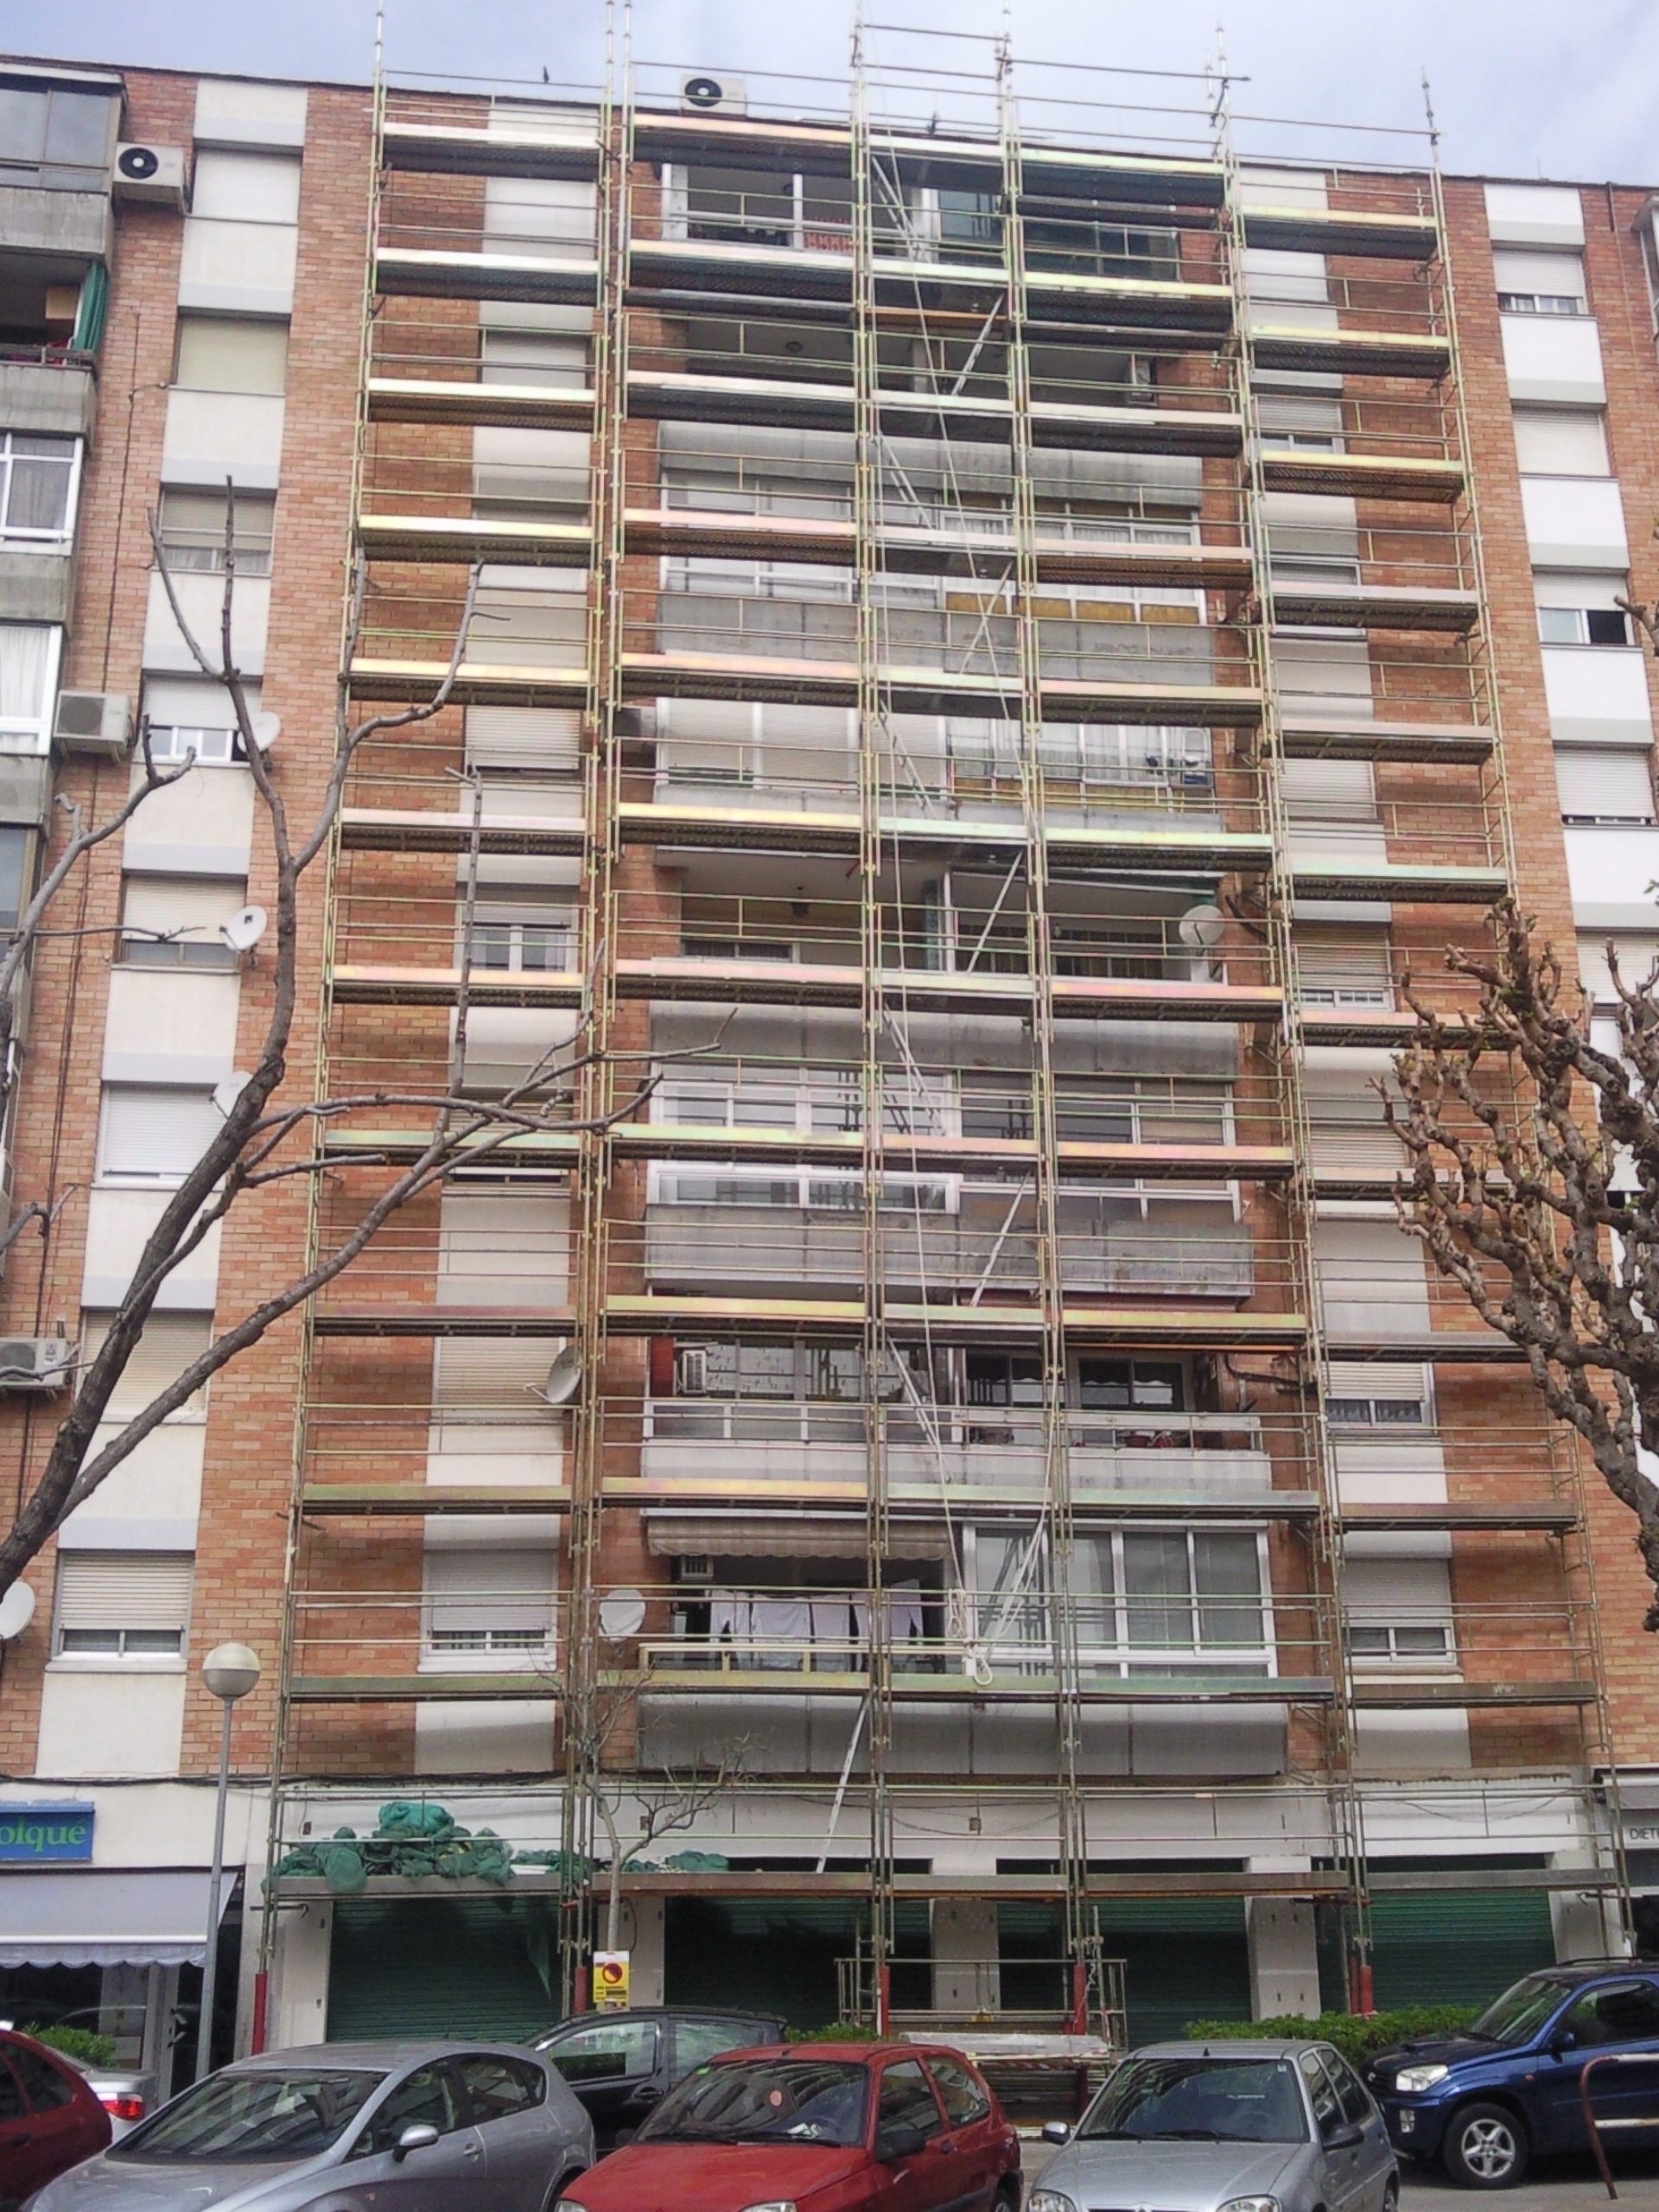 Edificio plurifamiliar fachada – Viladecans